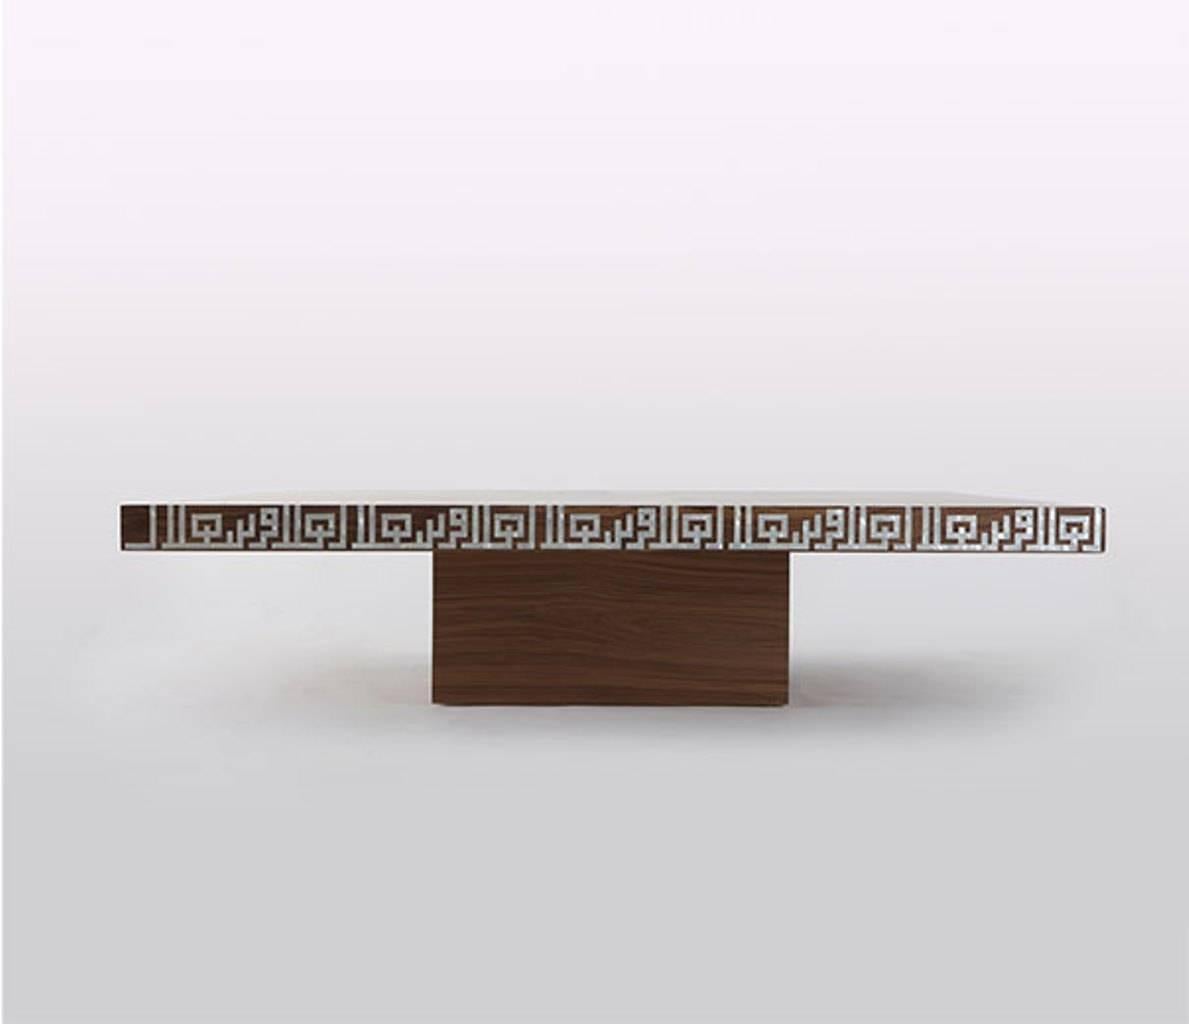 Table basse carrée contemporaine en finition noyer américain brun et incrustation de nacre. Le design de cette table met l'accent sur les motifs et la géométrie orientaux. Le caractère s'inspire directement de la forme du point arabe en forme de